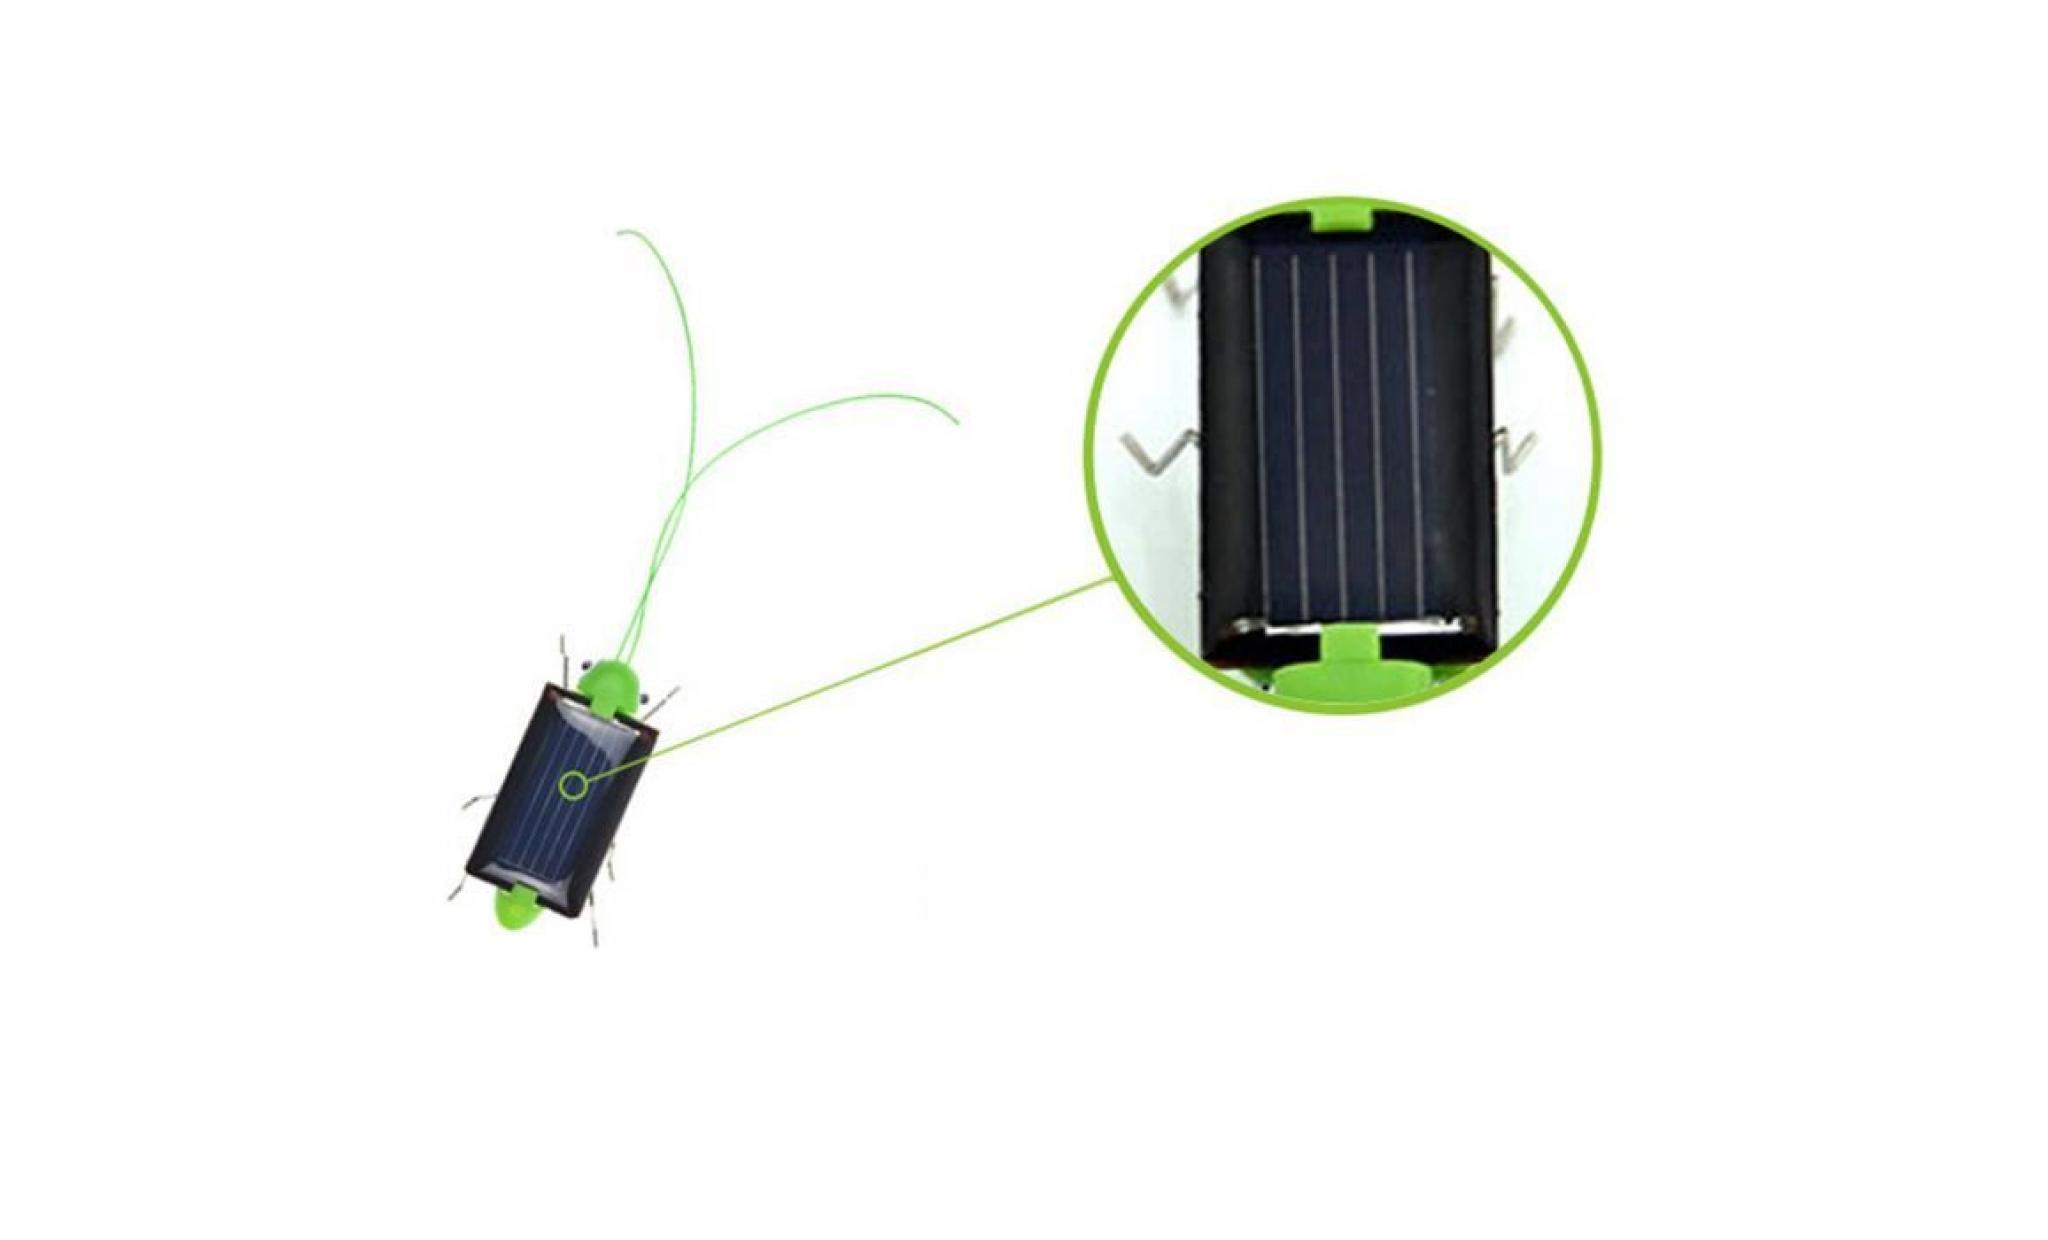 Éducation à énergie solaire grasshopper robot jouet solaire gadget jouet cadeau whicloud2125 pas cher